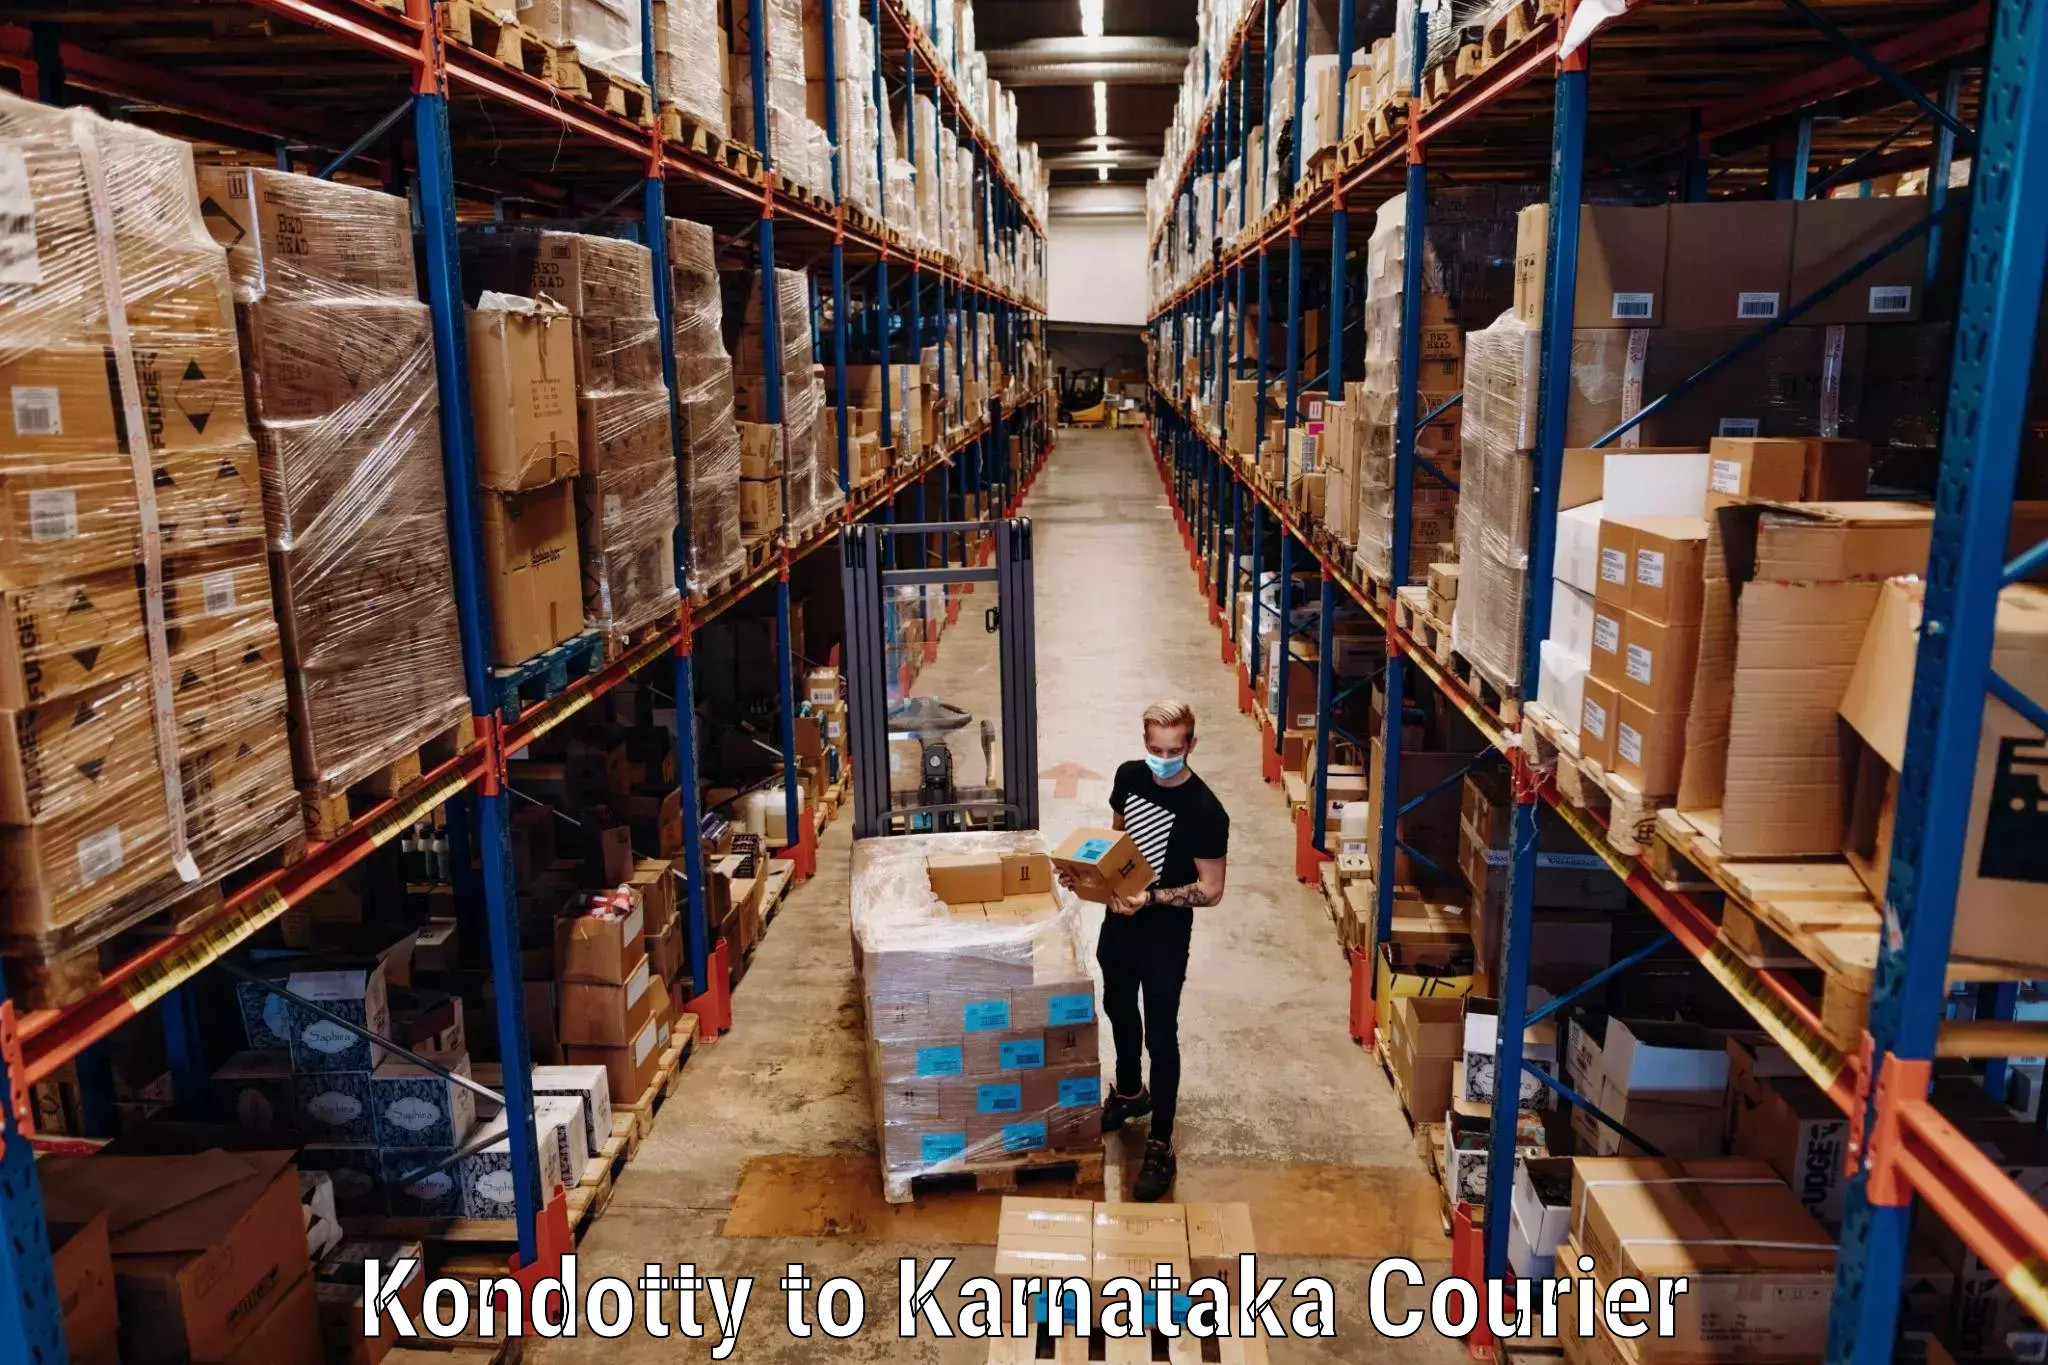 Luggage shipping specialists Kondotty to yedrami